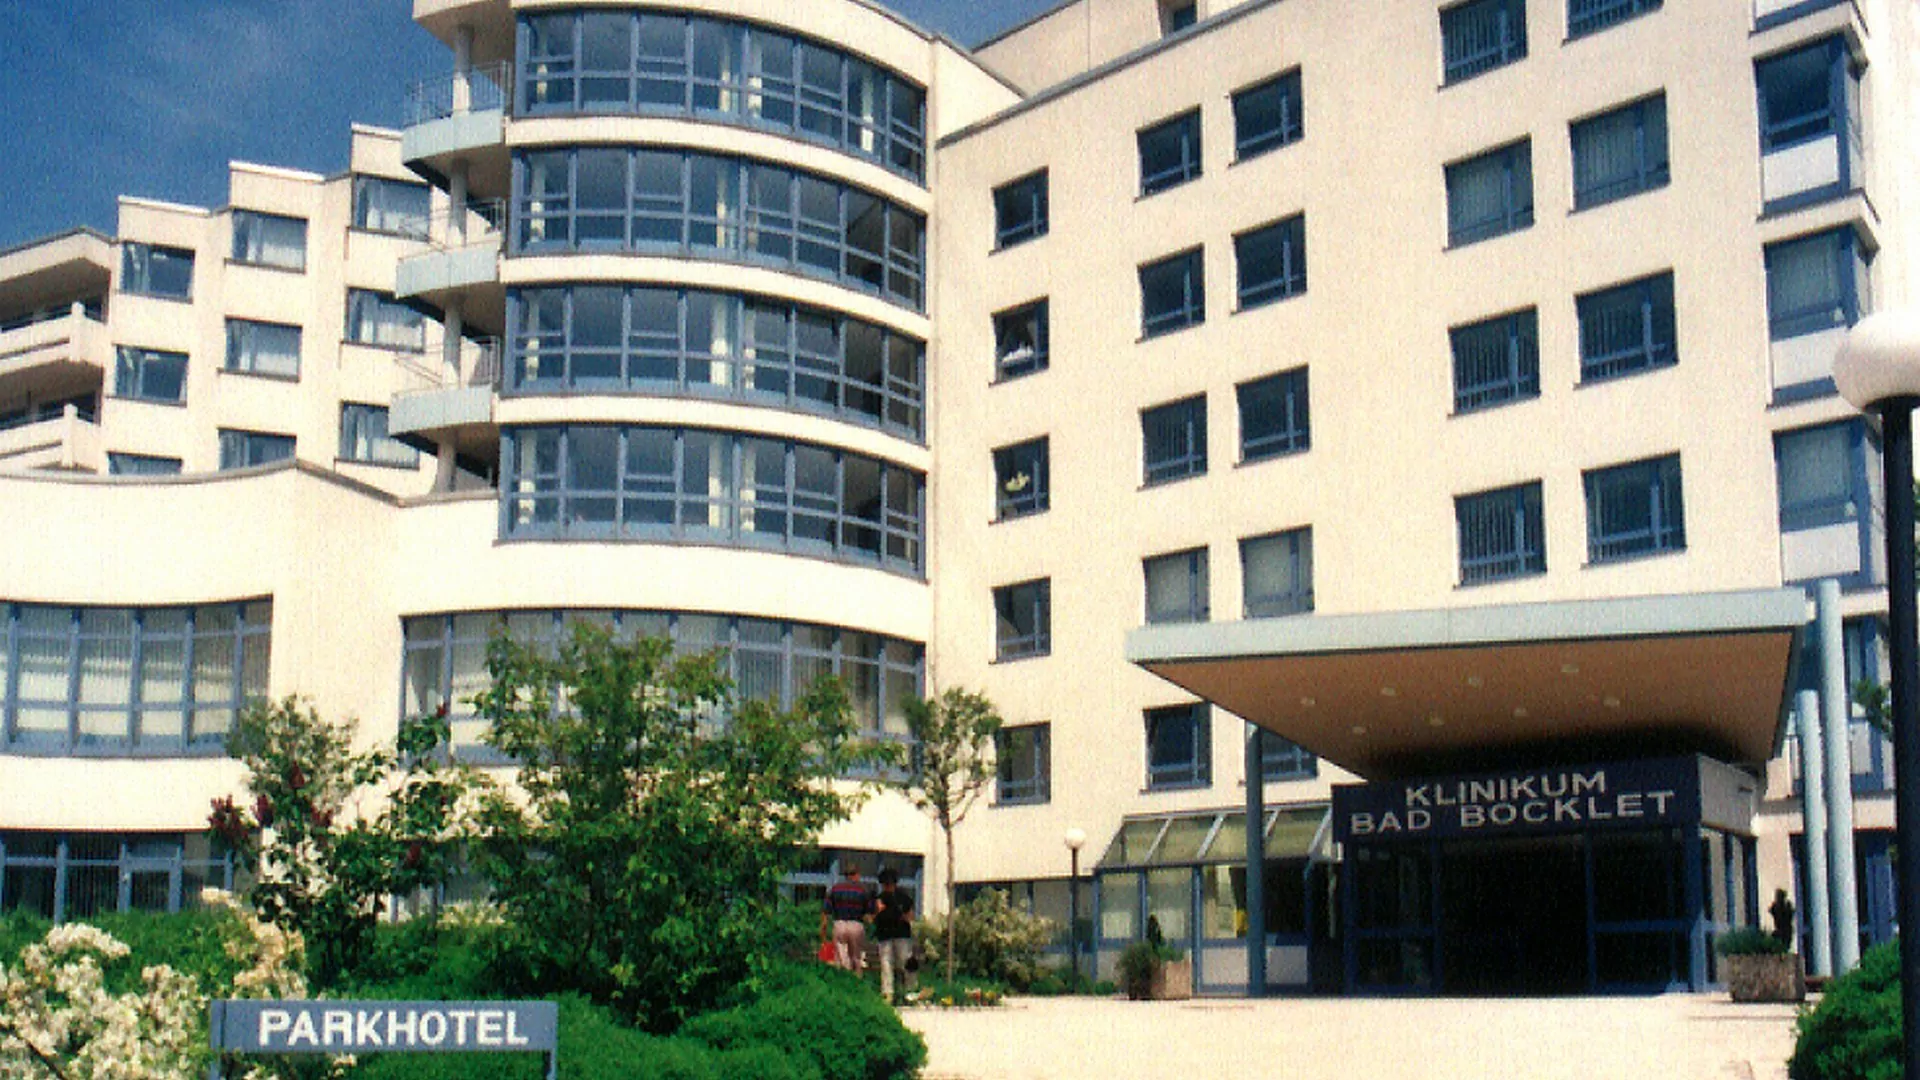 Die Klinik orientiert sich neu. 1999 kam ein Hotelbereich hinzu und es erfolgte eine Umbenennung in „Klinikum“.